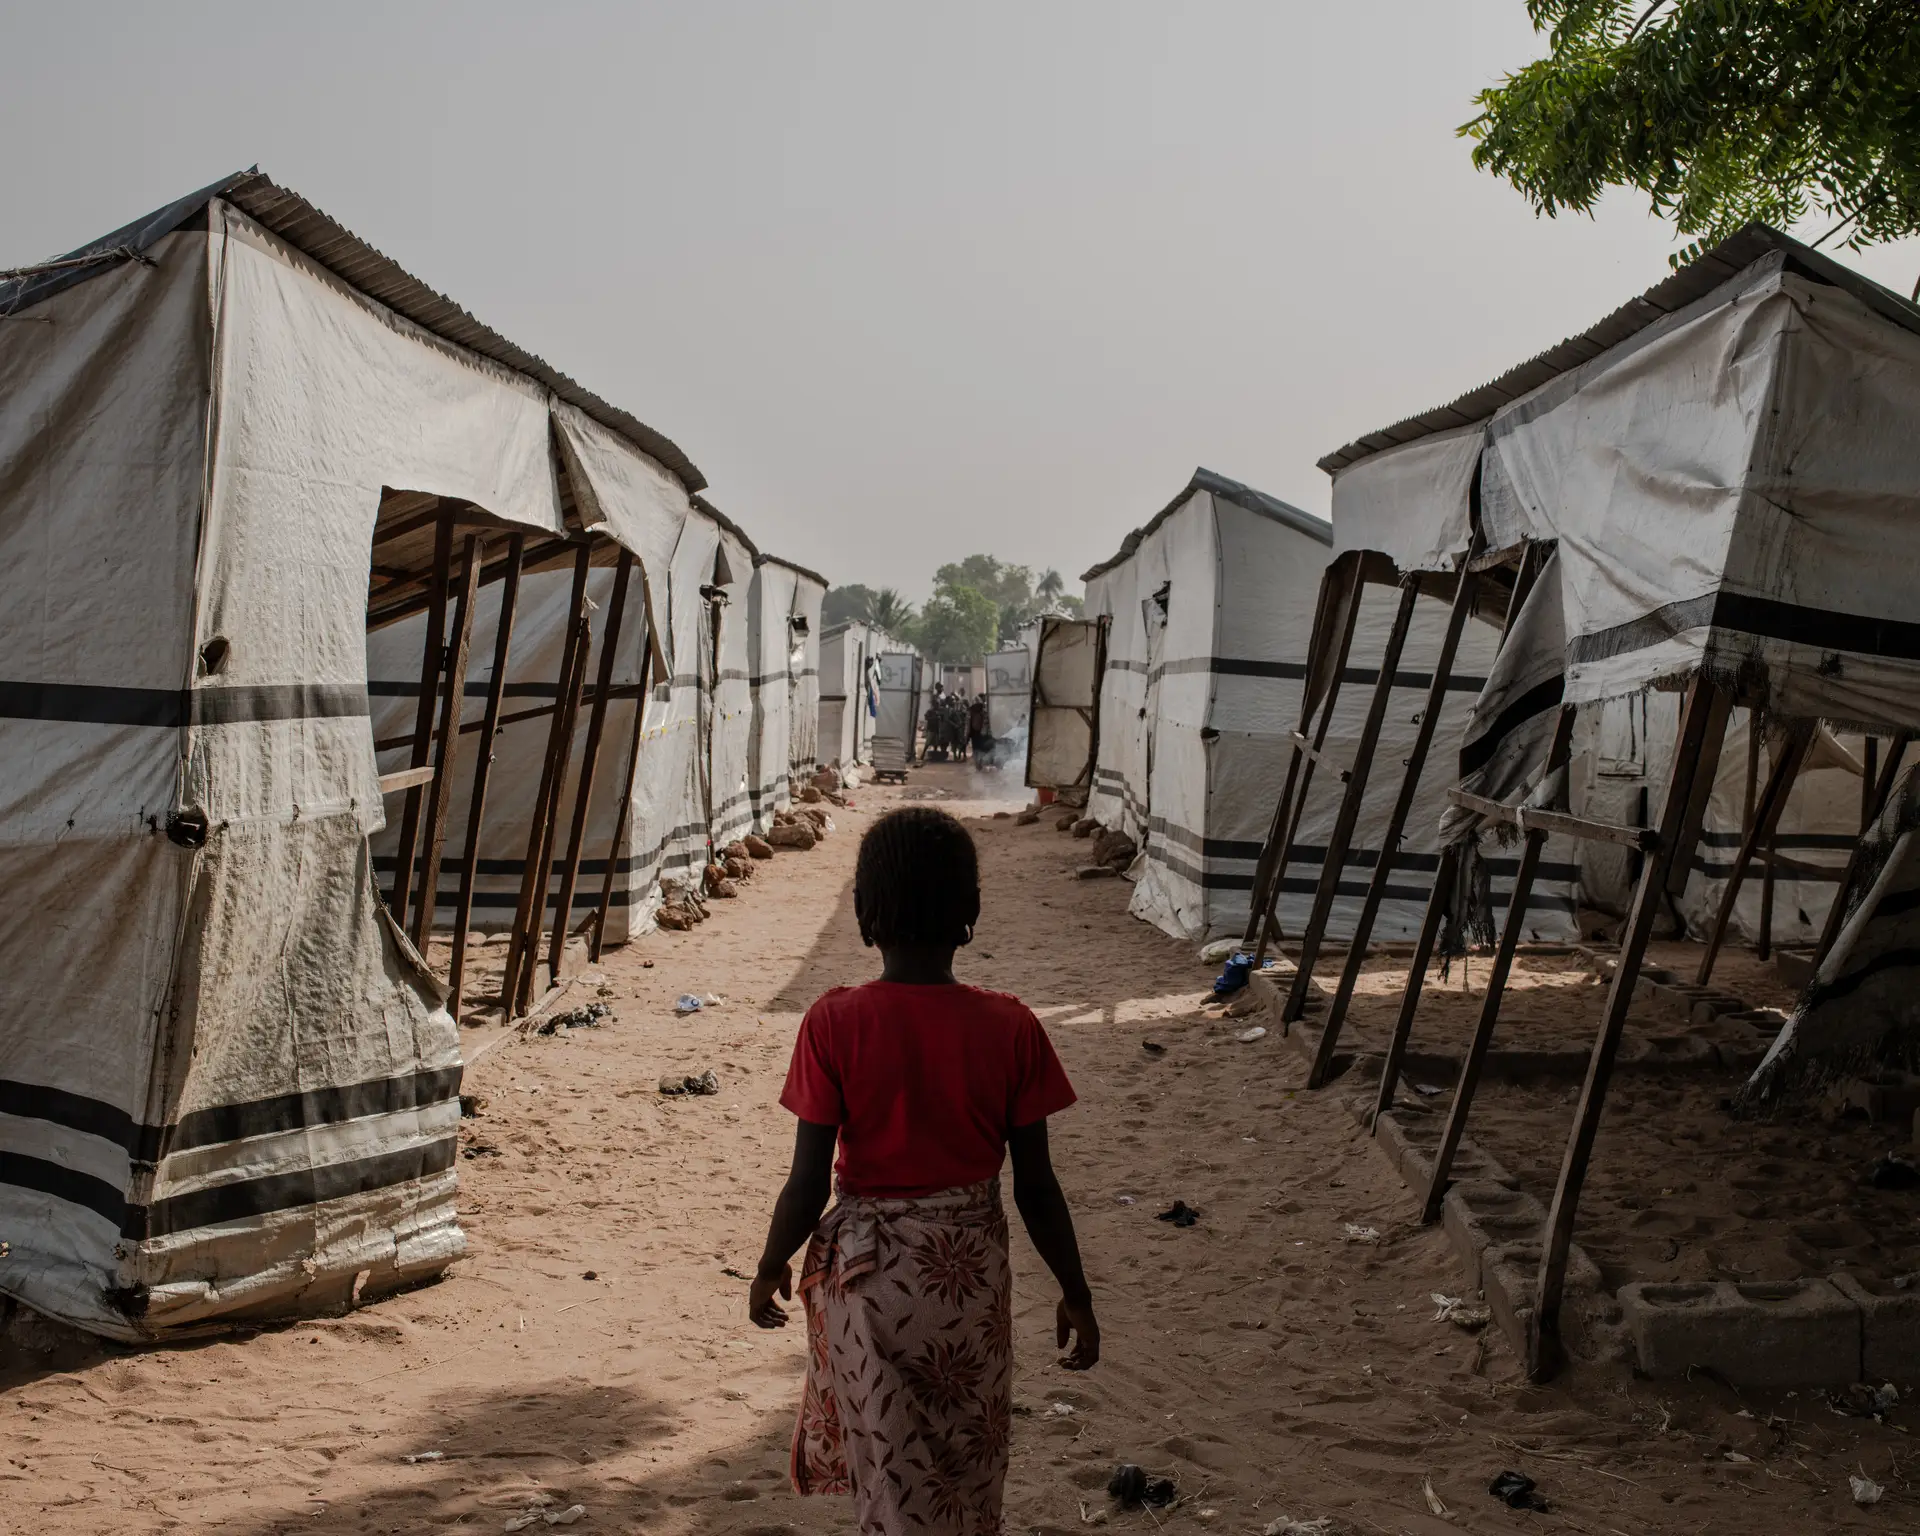 Shiana mudou-se para o campo de Mbawa há cinco anos com a irmã mais velha. Foi abusada sexualmente duas vezes por homens que invadiram a tenda onde se abriga.